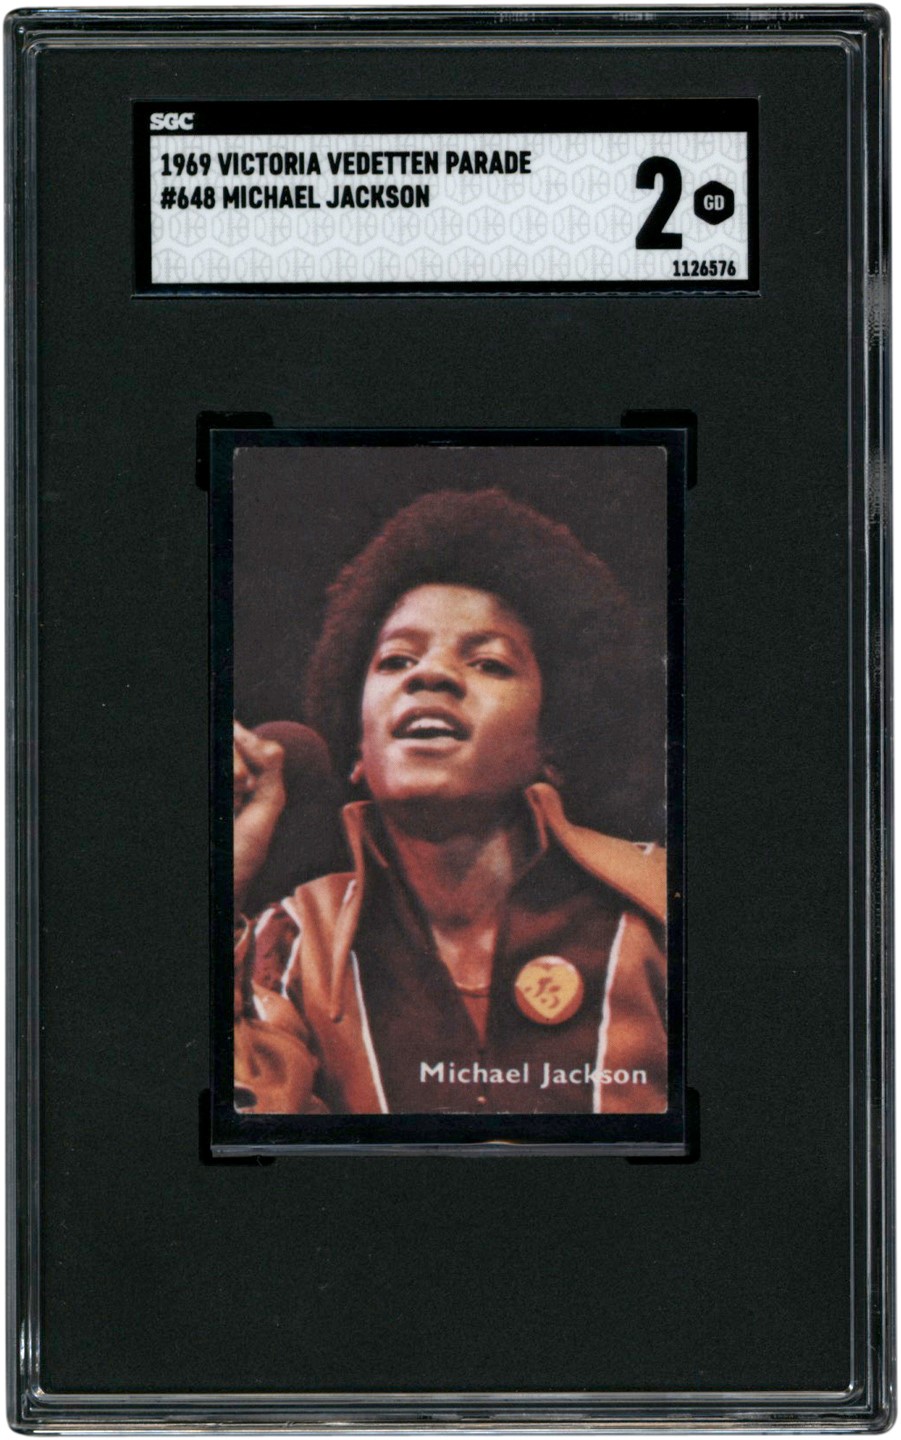 - 1969 Victoria Vedetten Parade #648 Michael Jackson SGC GD 2